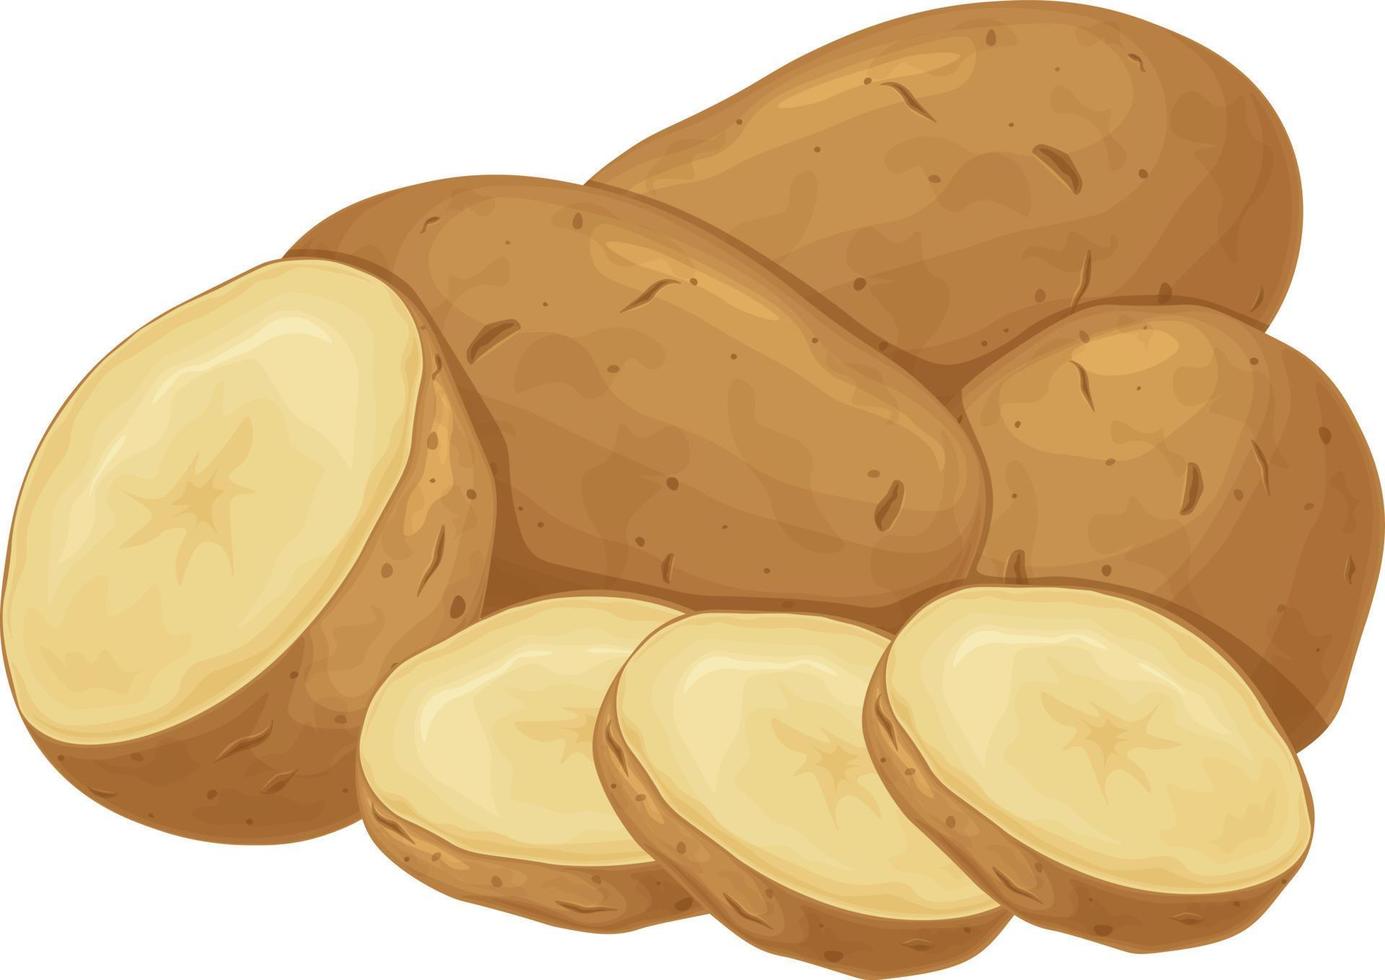 Kartoffel. Kartoffelknollen. ein reifes Gemüse. Vegetarisches Produkt. geschnittene Kartoffeln. Vektor-Illustration isoliert auf weißem Hintergrund vektor